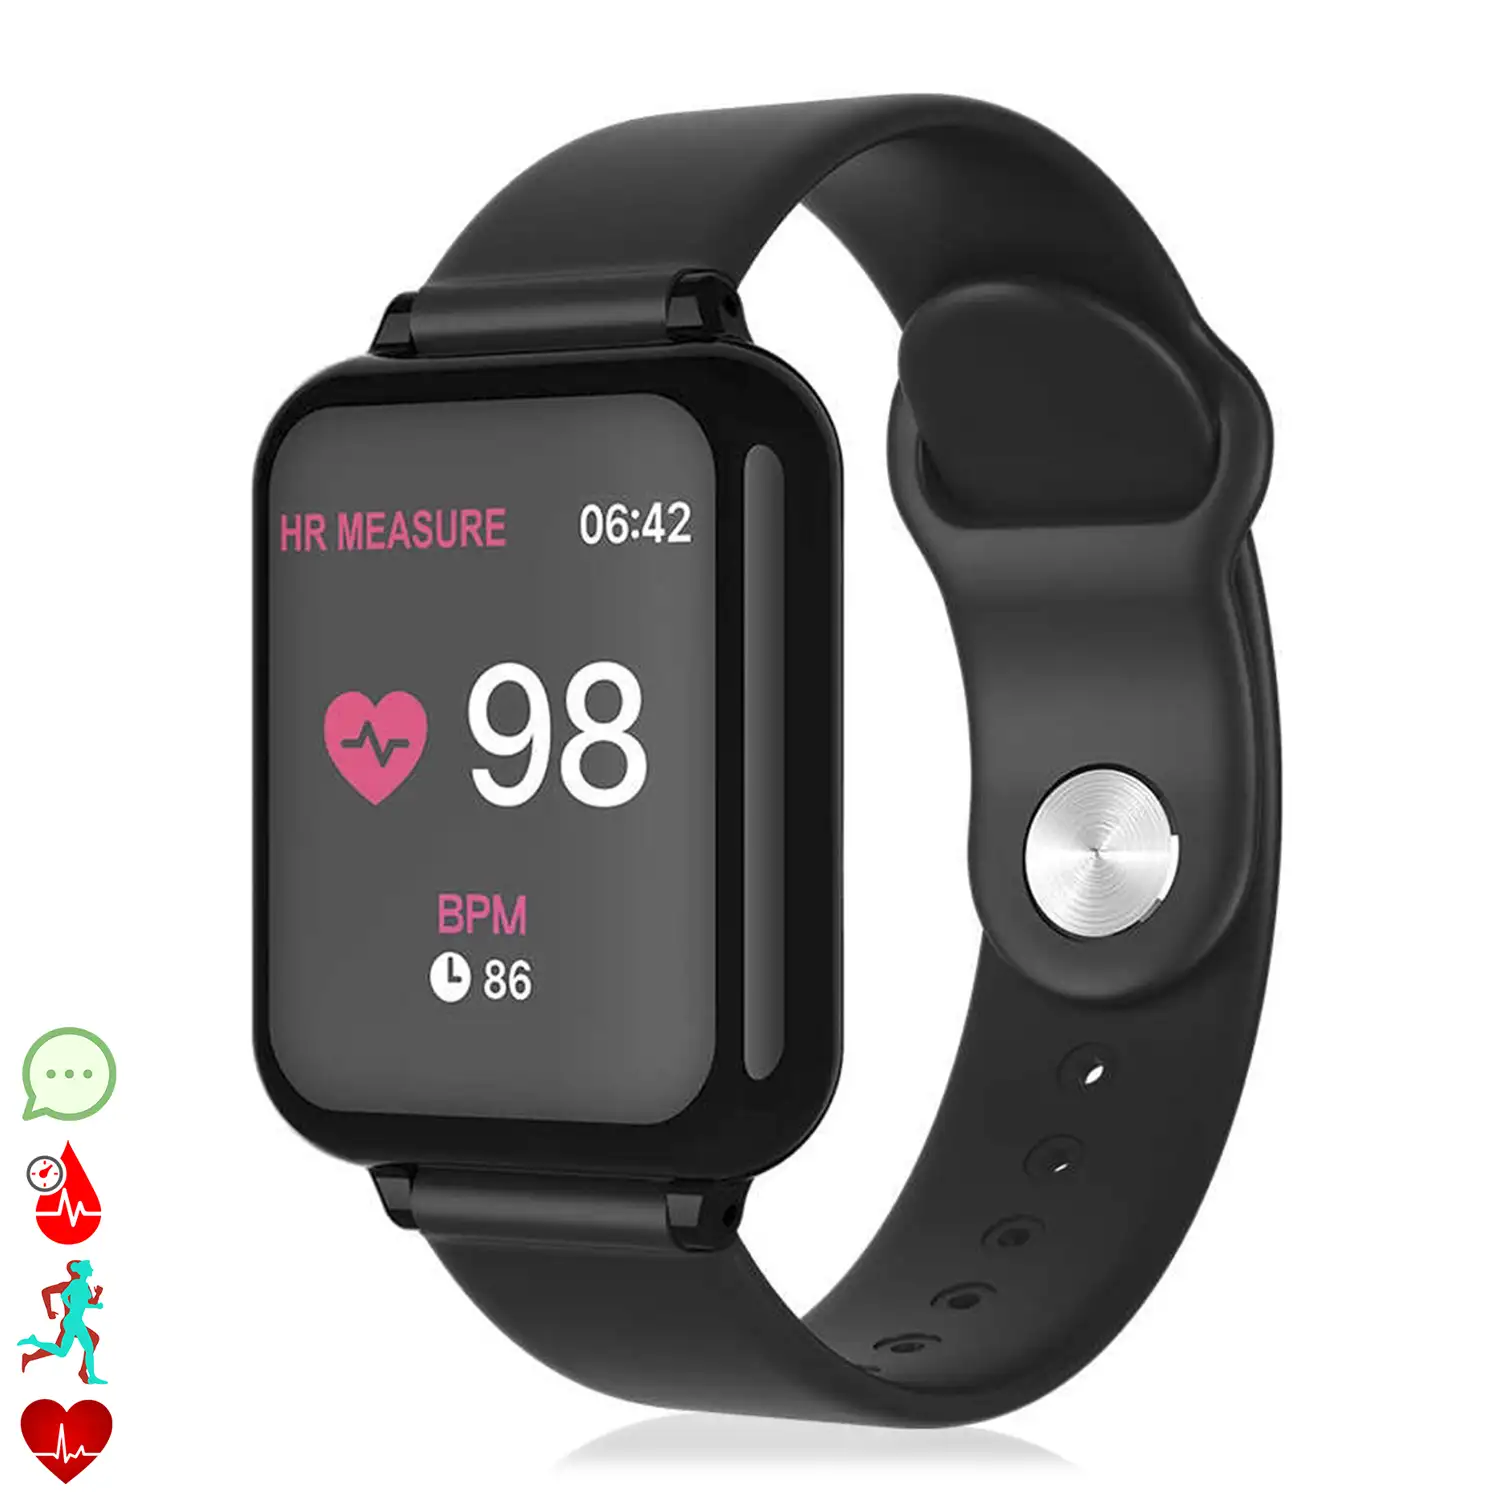 Smartwatch I5 con 5 modos deportivos, oxígeno en sangre, pulso, notificaciones iOS y Android.